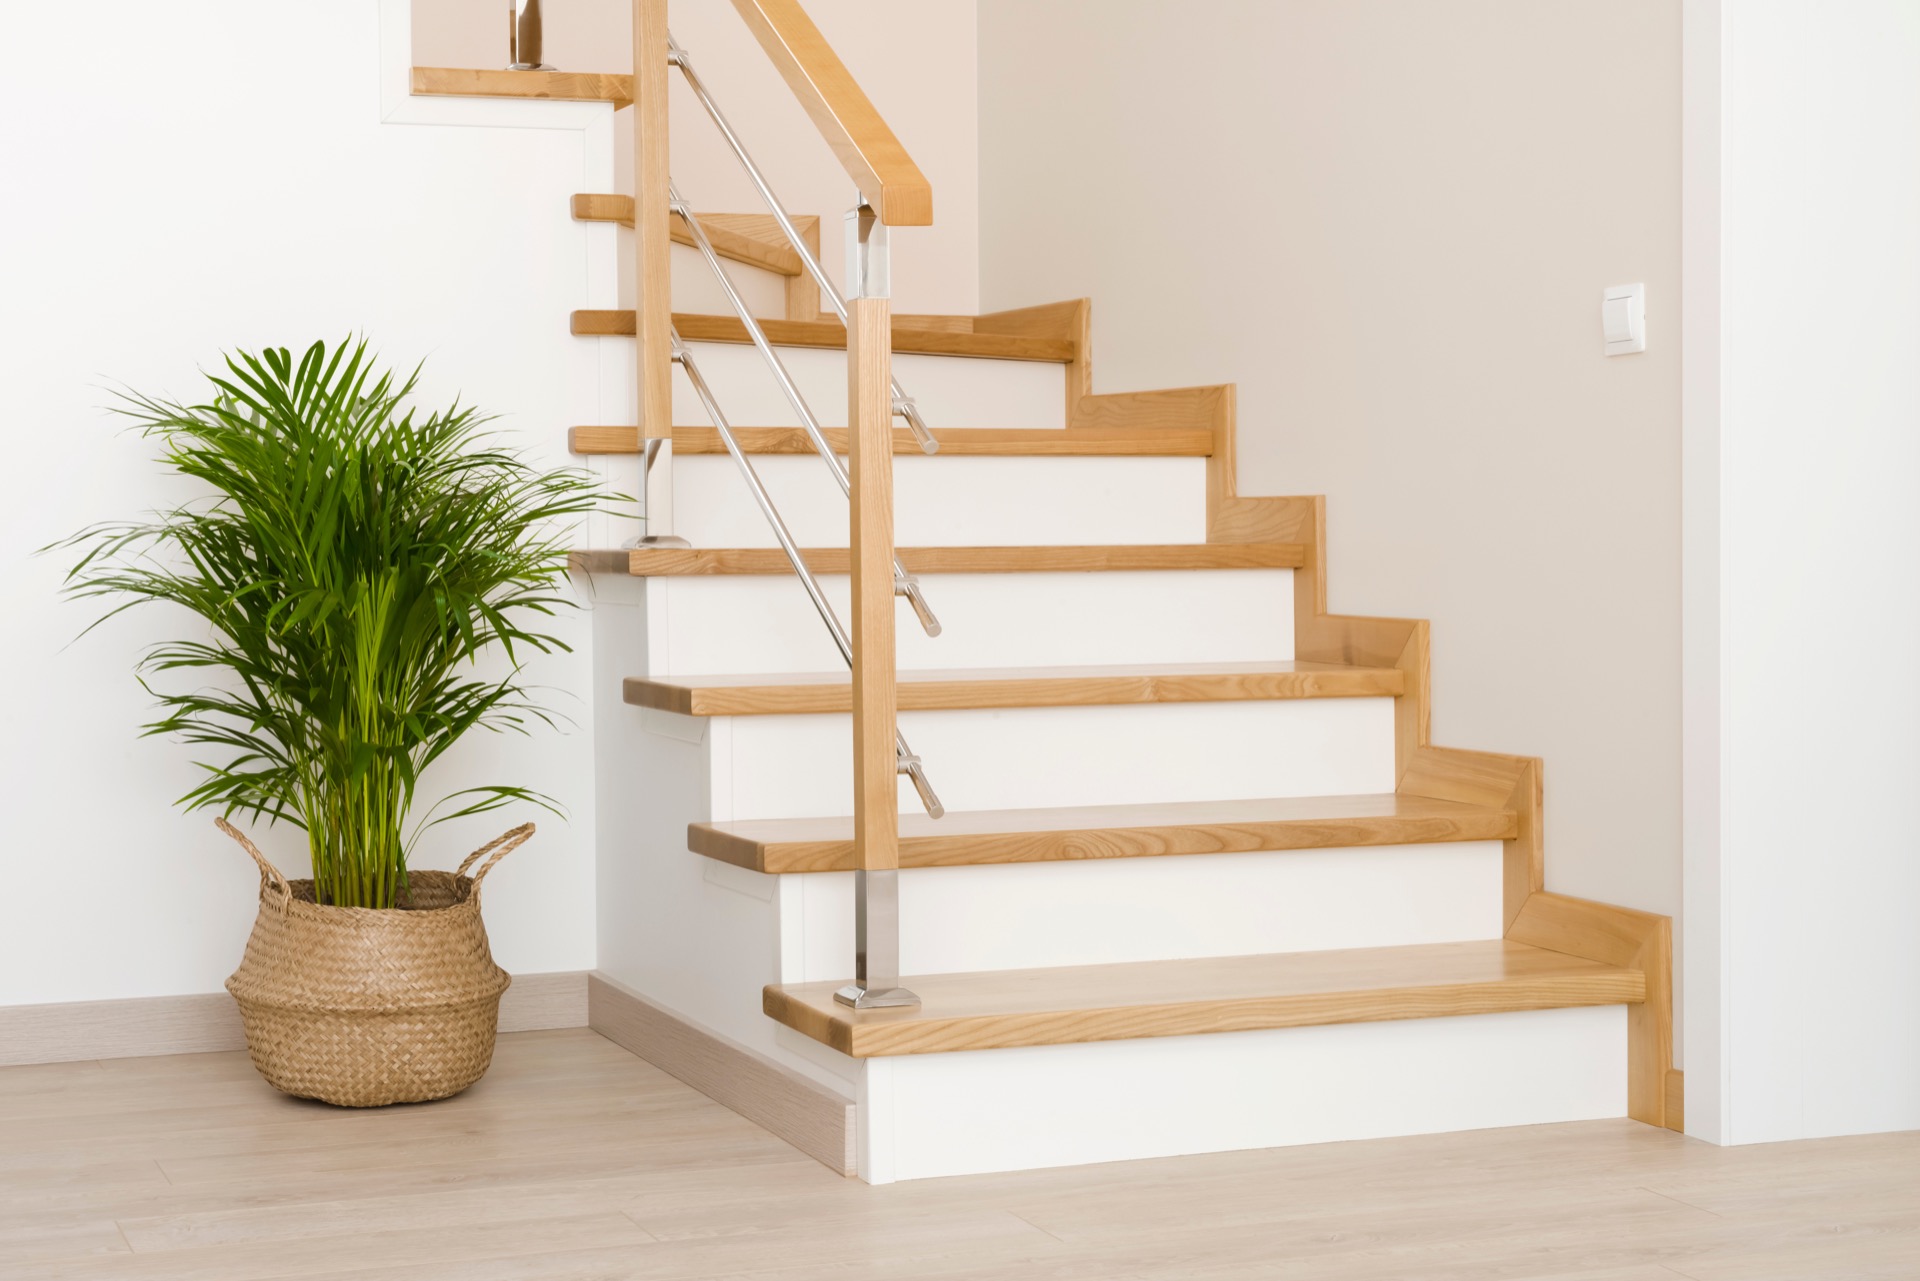 La contremarche sépare verticalement deux marches d'un escalier. C'est un élément clé de la conception d'un escalier, qui joue à la fois un rôle fonctionnel, sécuritaire et esthétique. © didecs, Adobe Stock